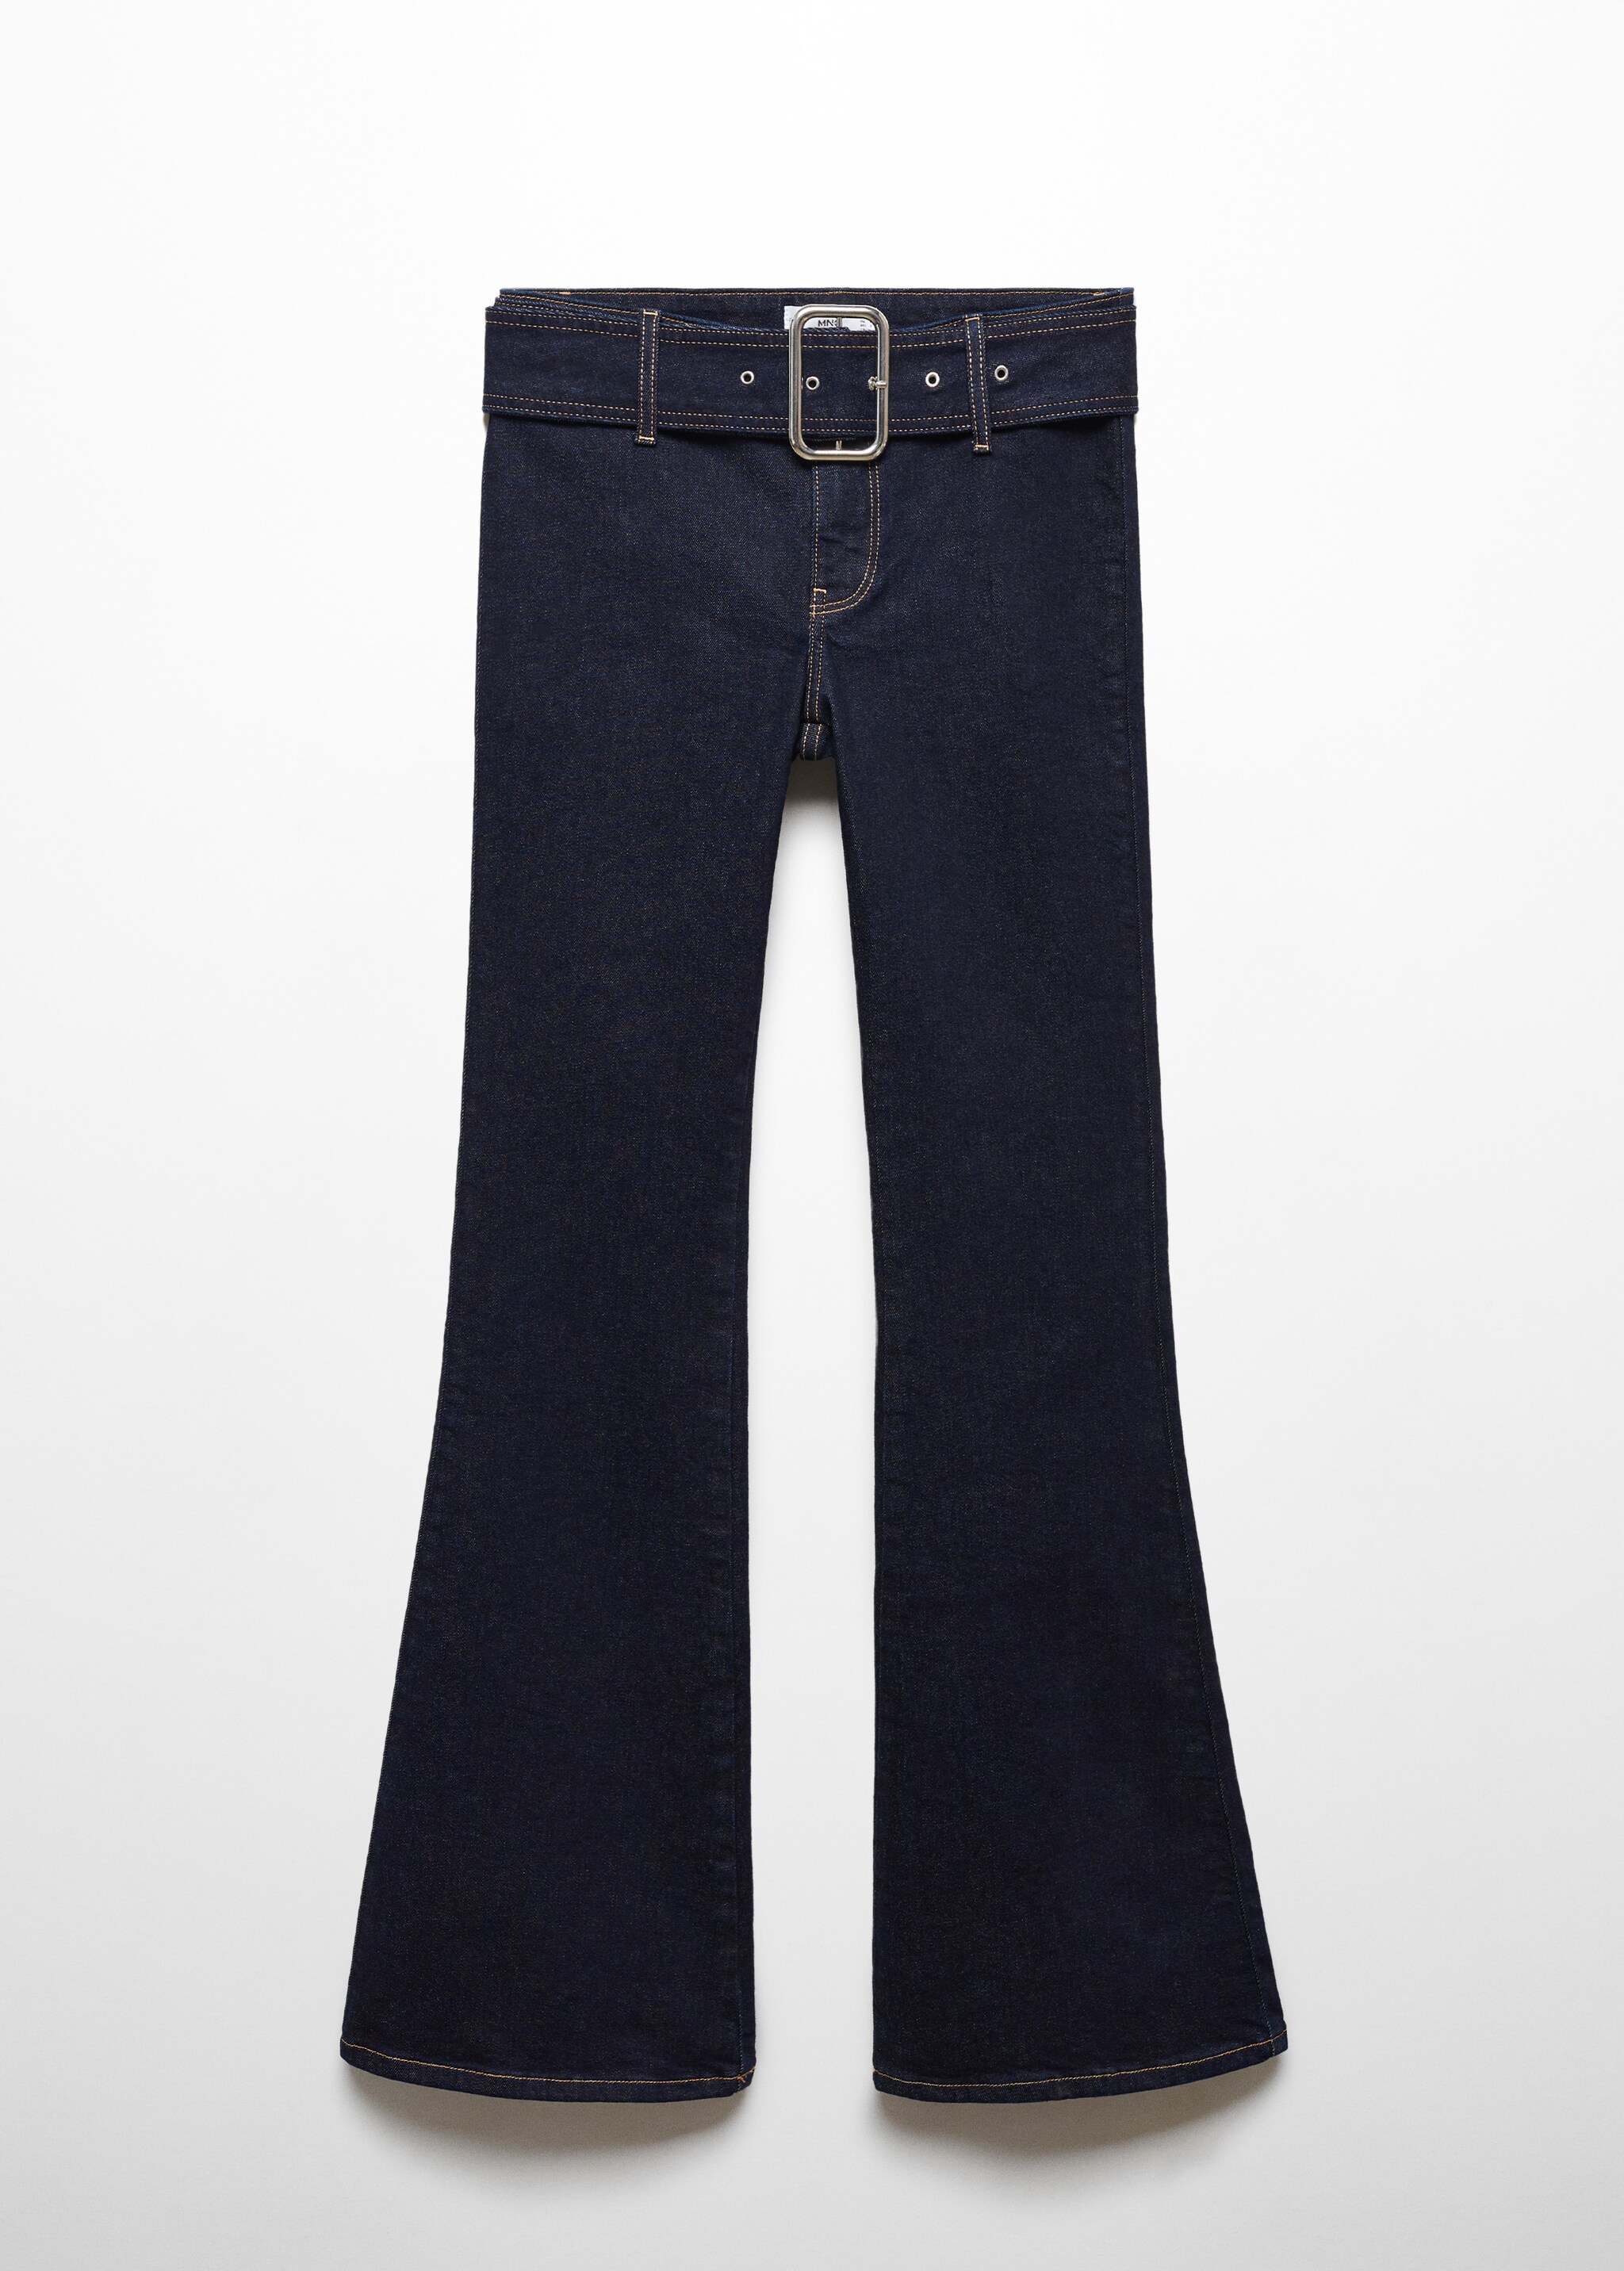 Jeans flare cinturón - Artículo sin modelo